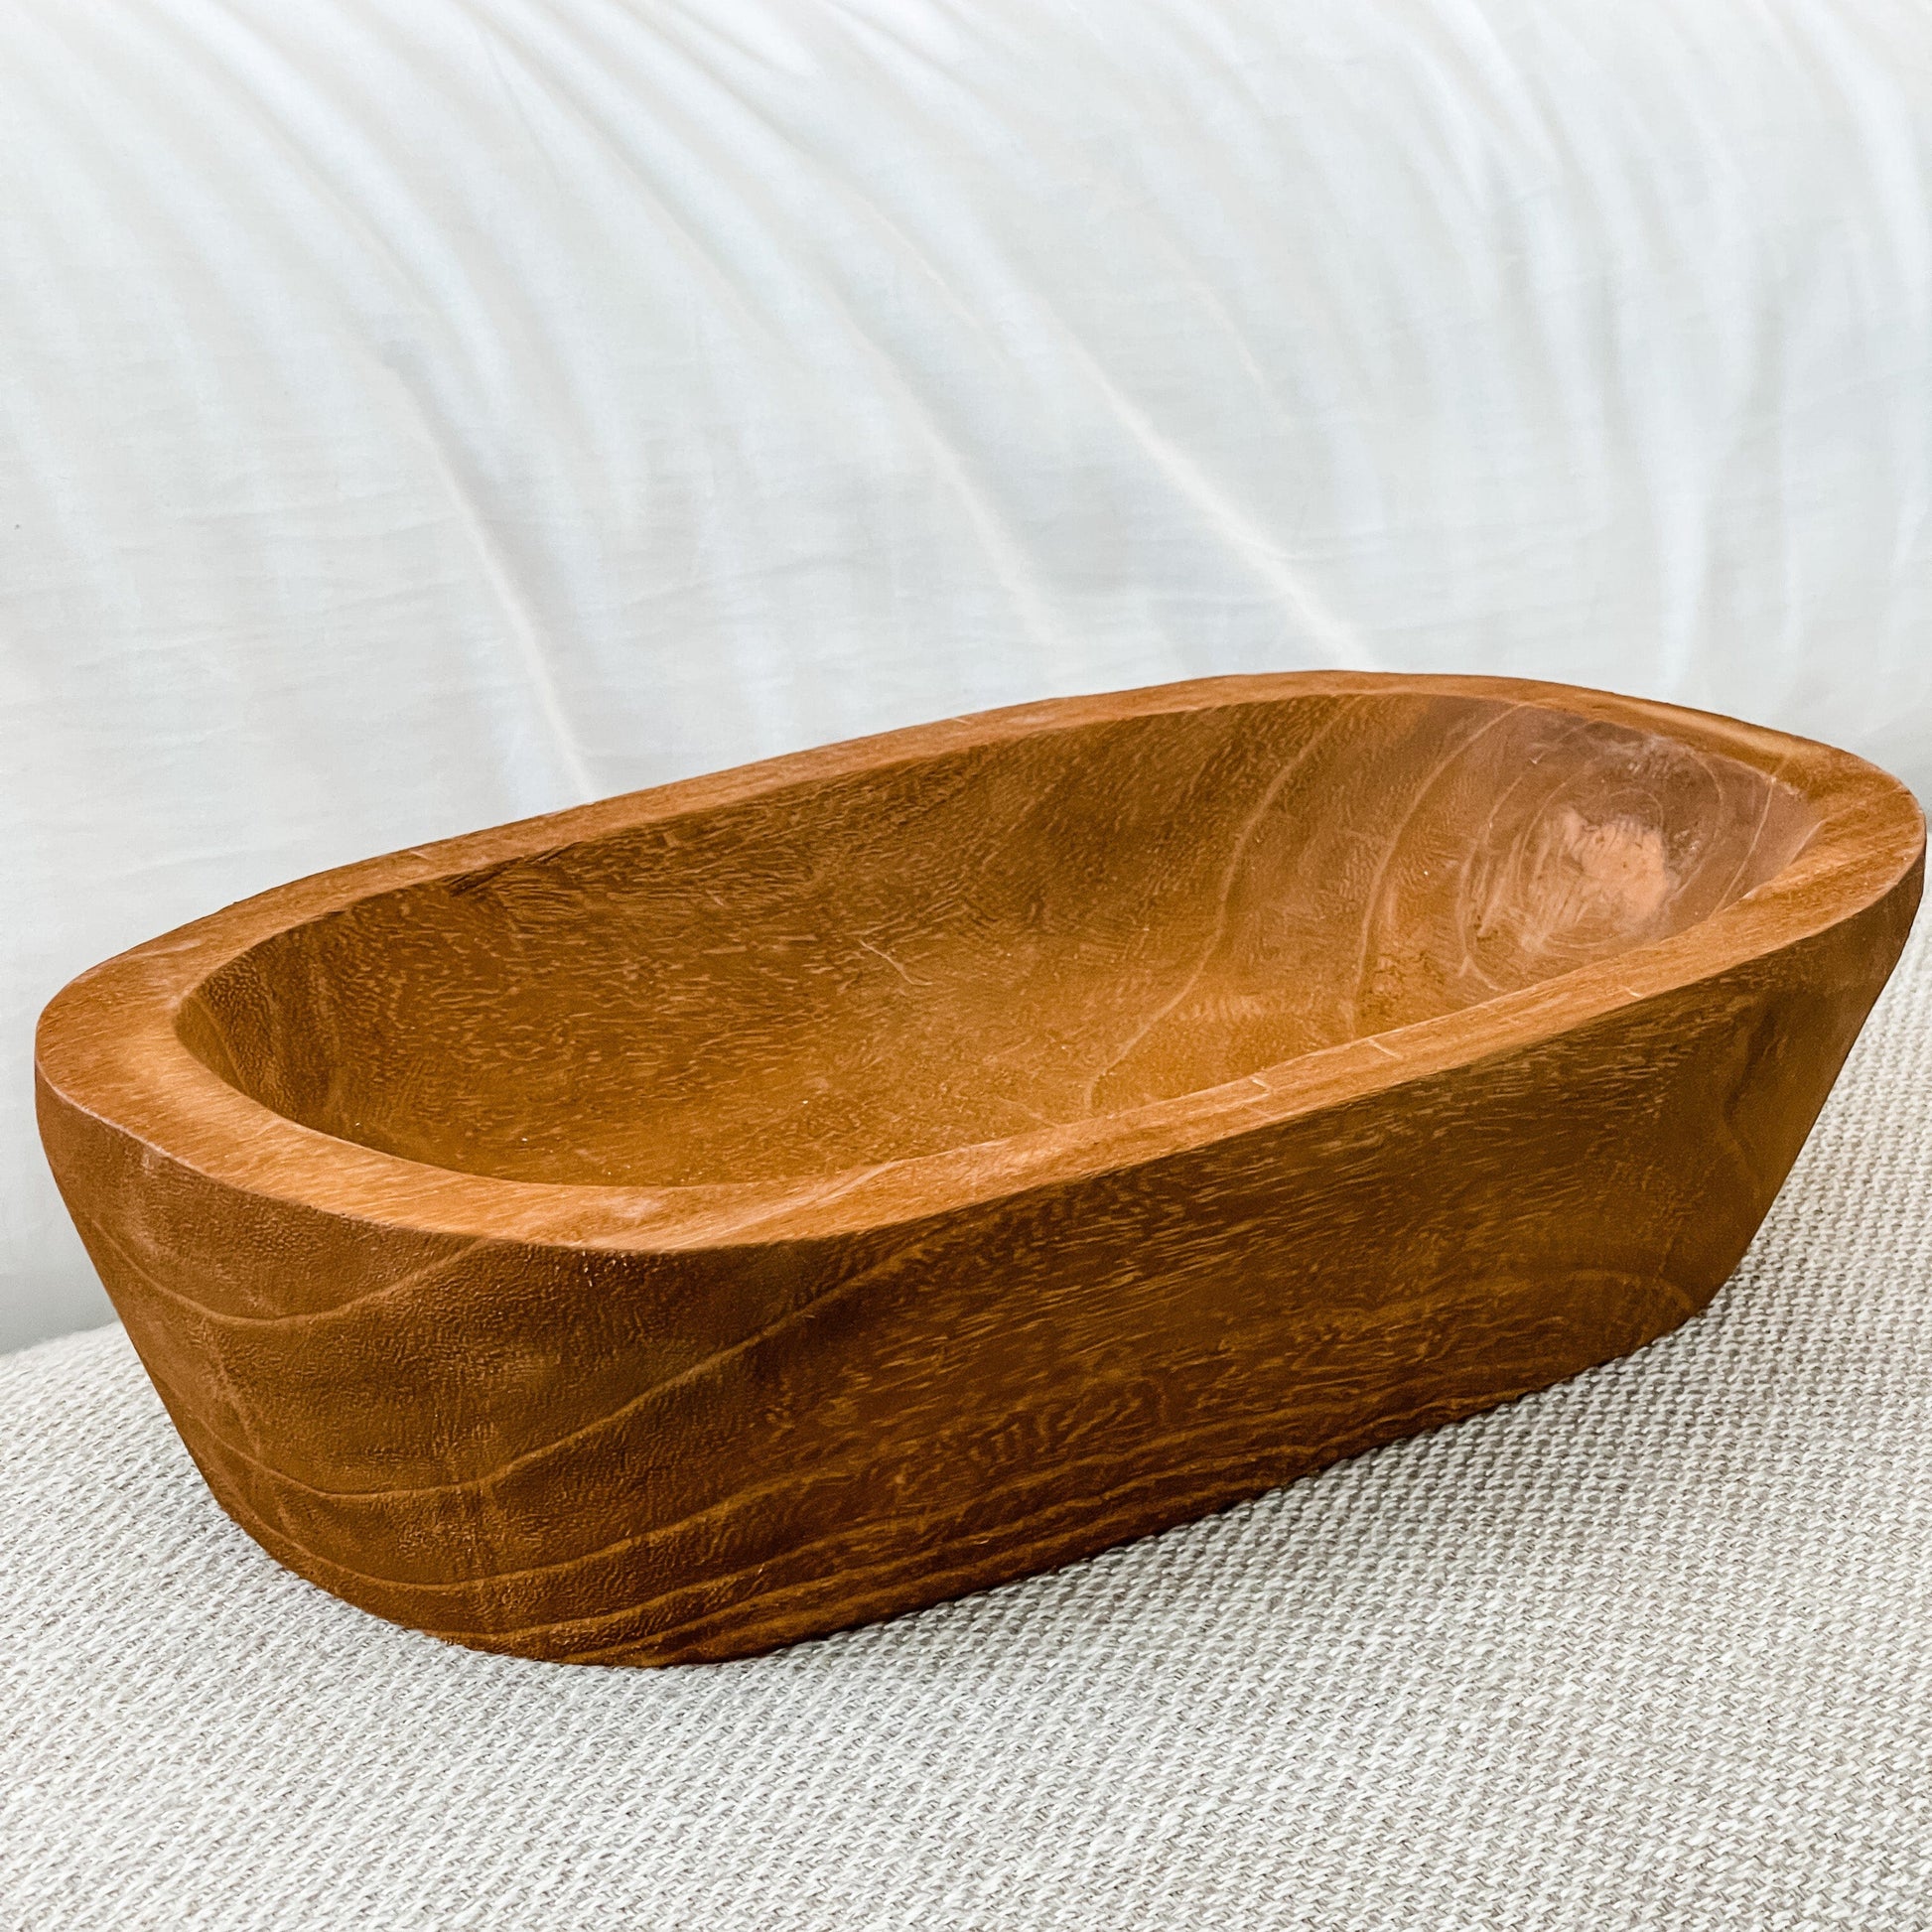 Wooden Dough Bowl, Home Decor